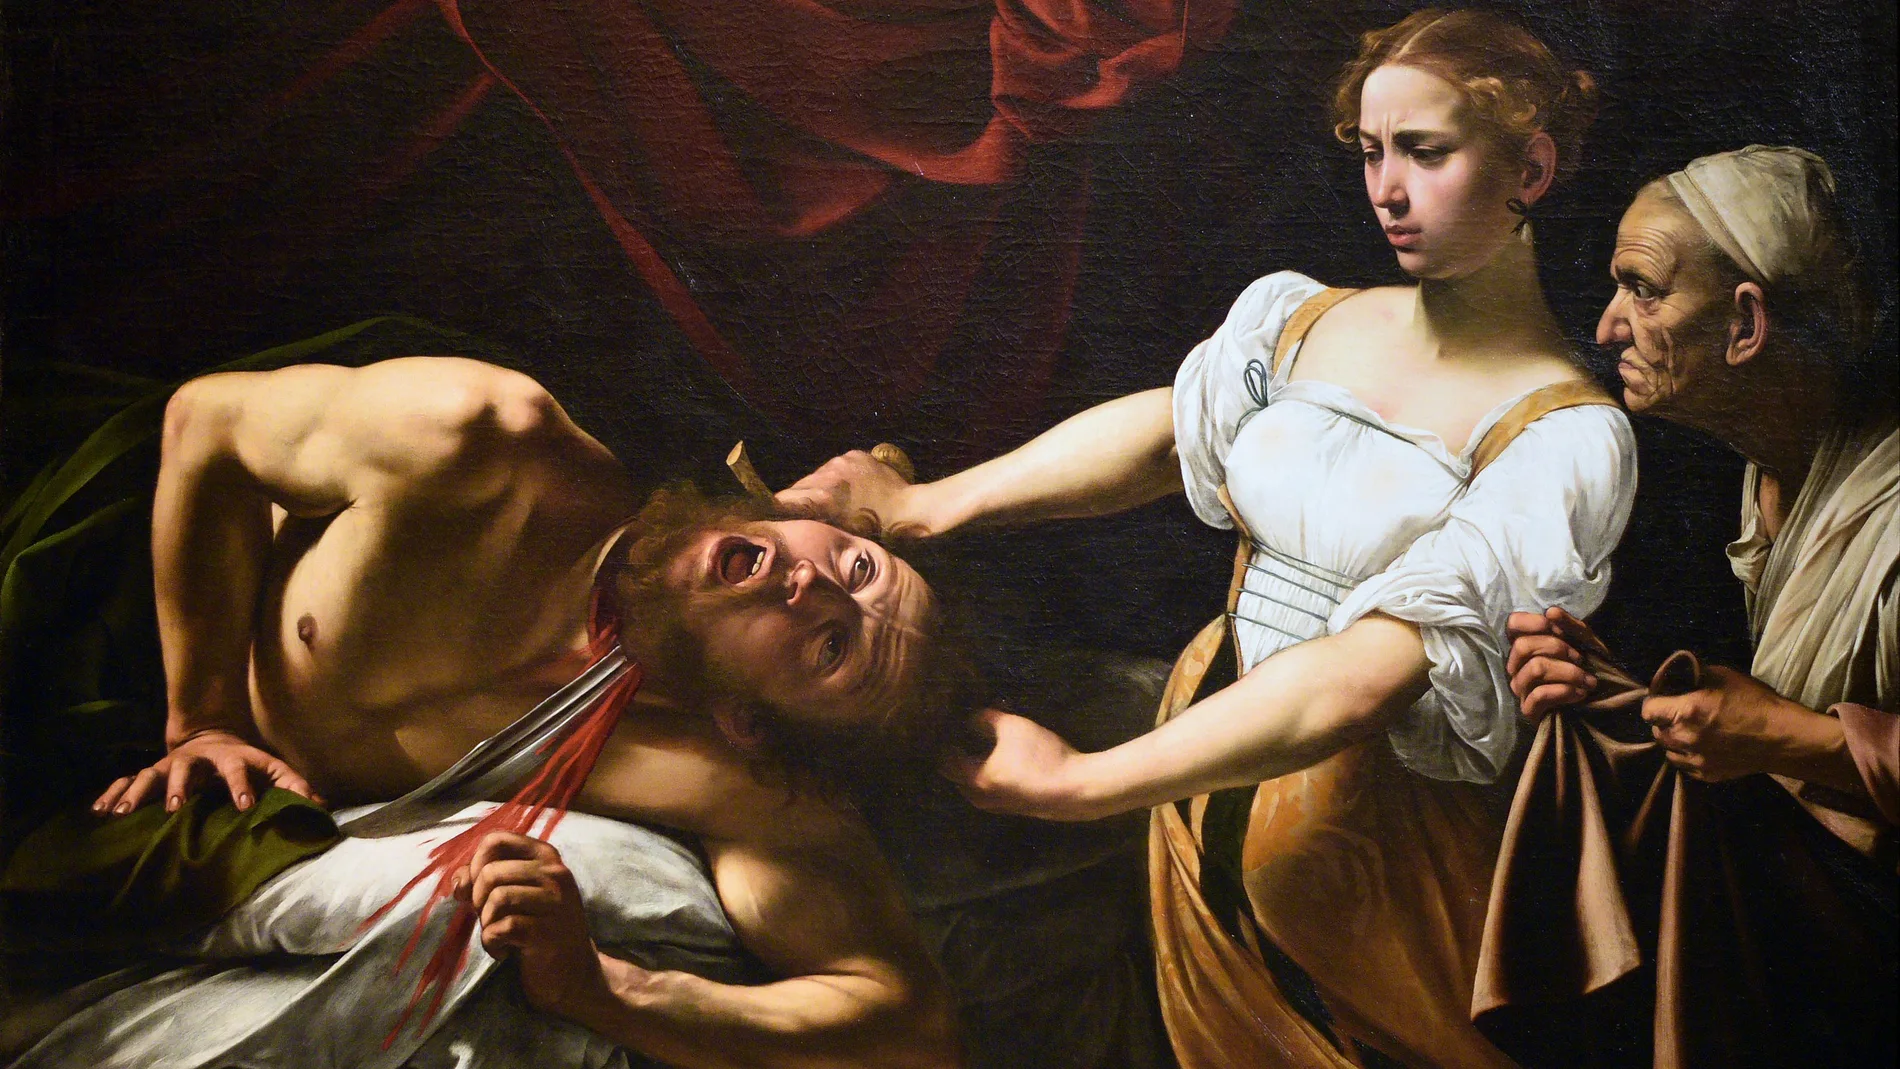 «Judit y Holofermes», de Caravaggio, un cuadro que retrata bien la excelencia artística y el clima violento de la época